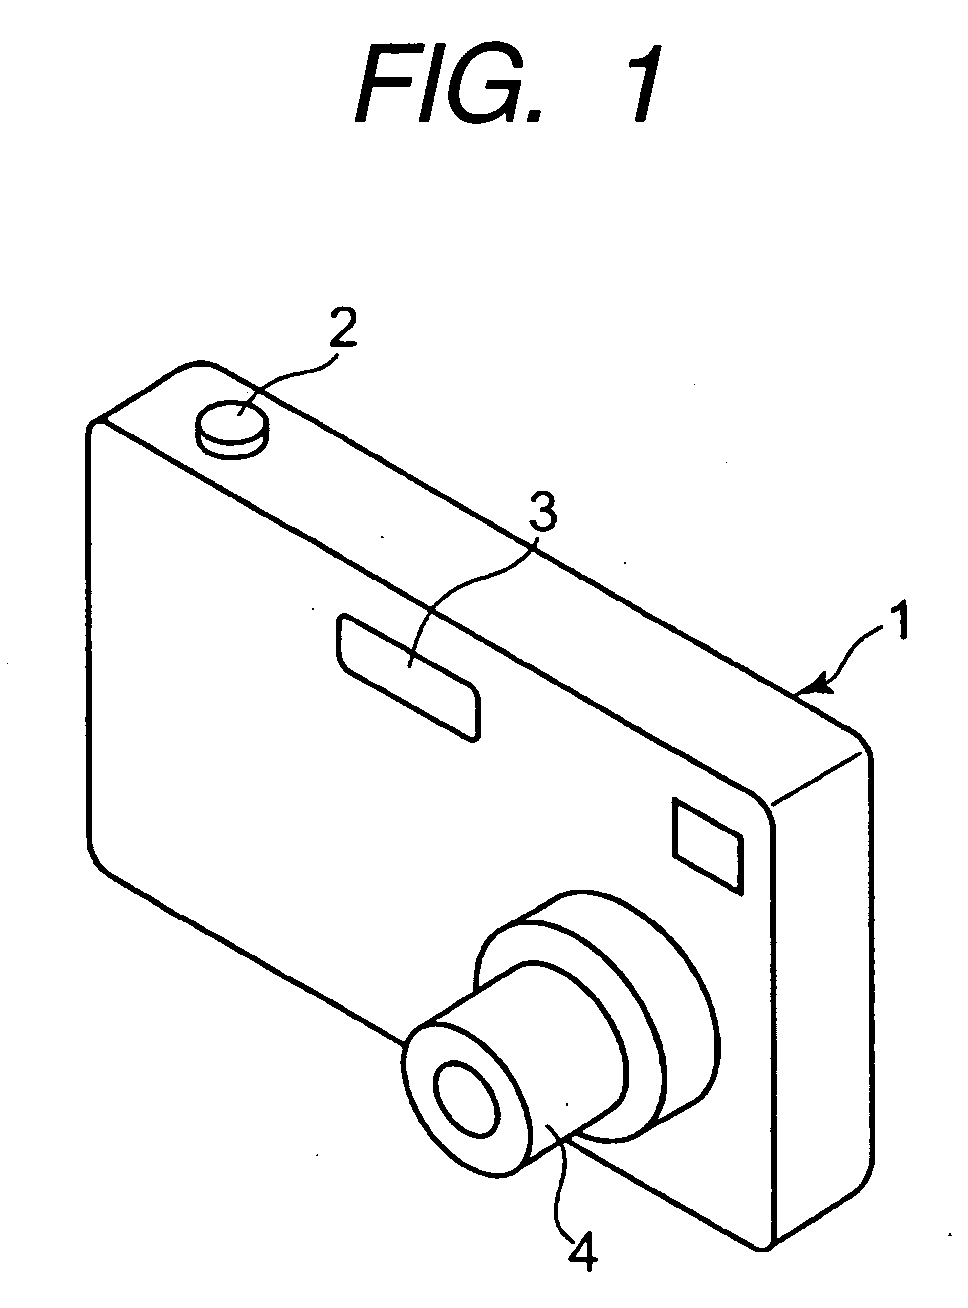 Actuator, optical apparatus using actuator, and method of manufacturing actuator